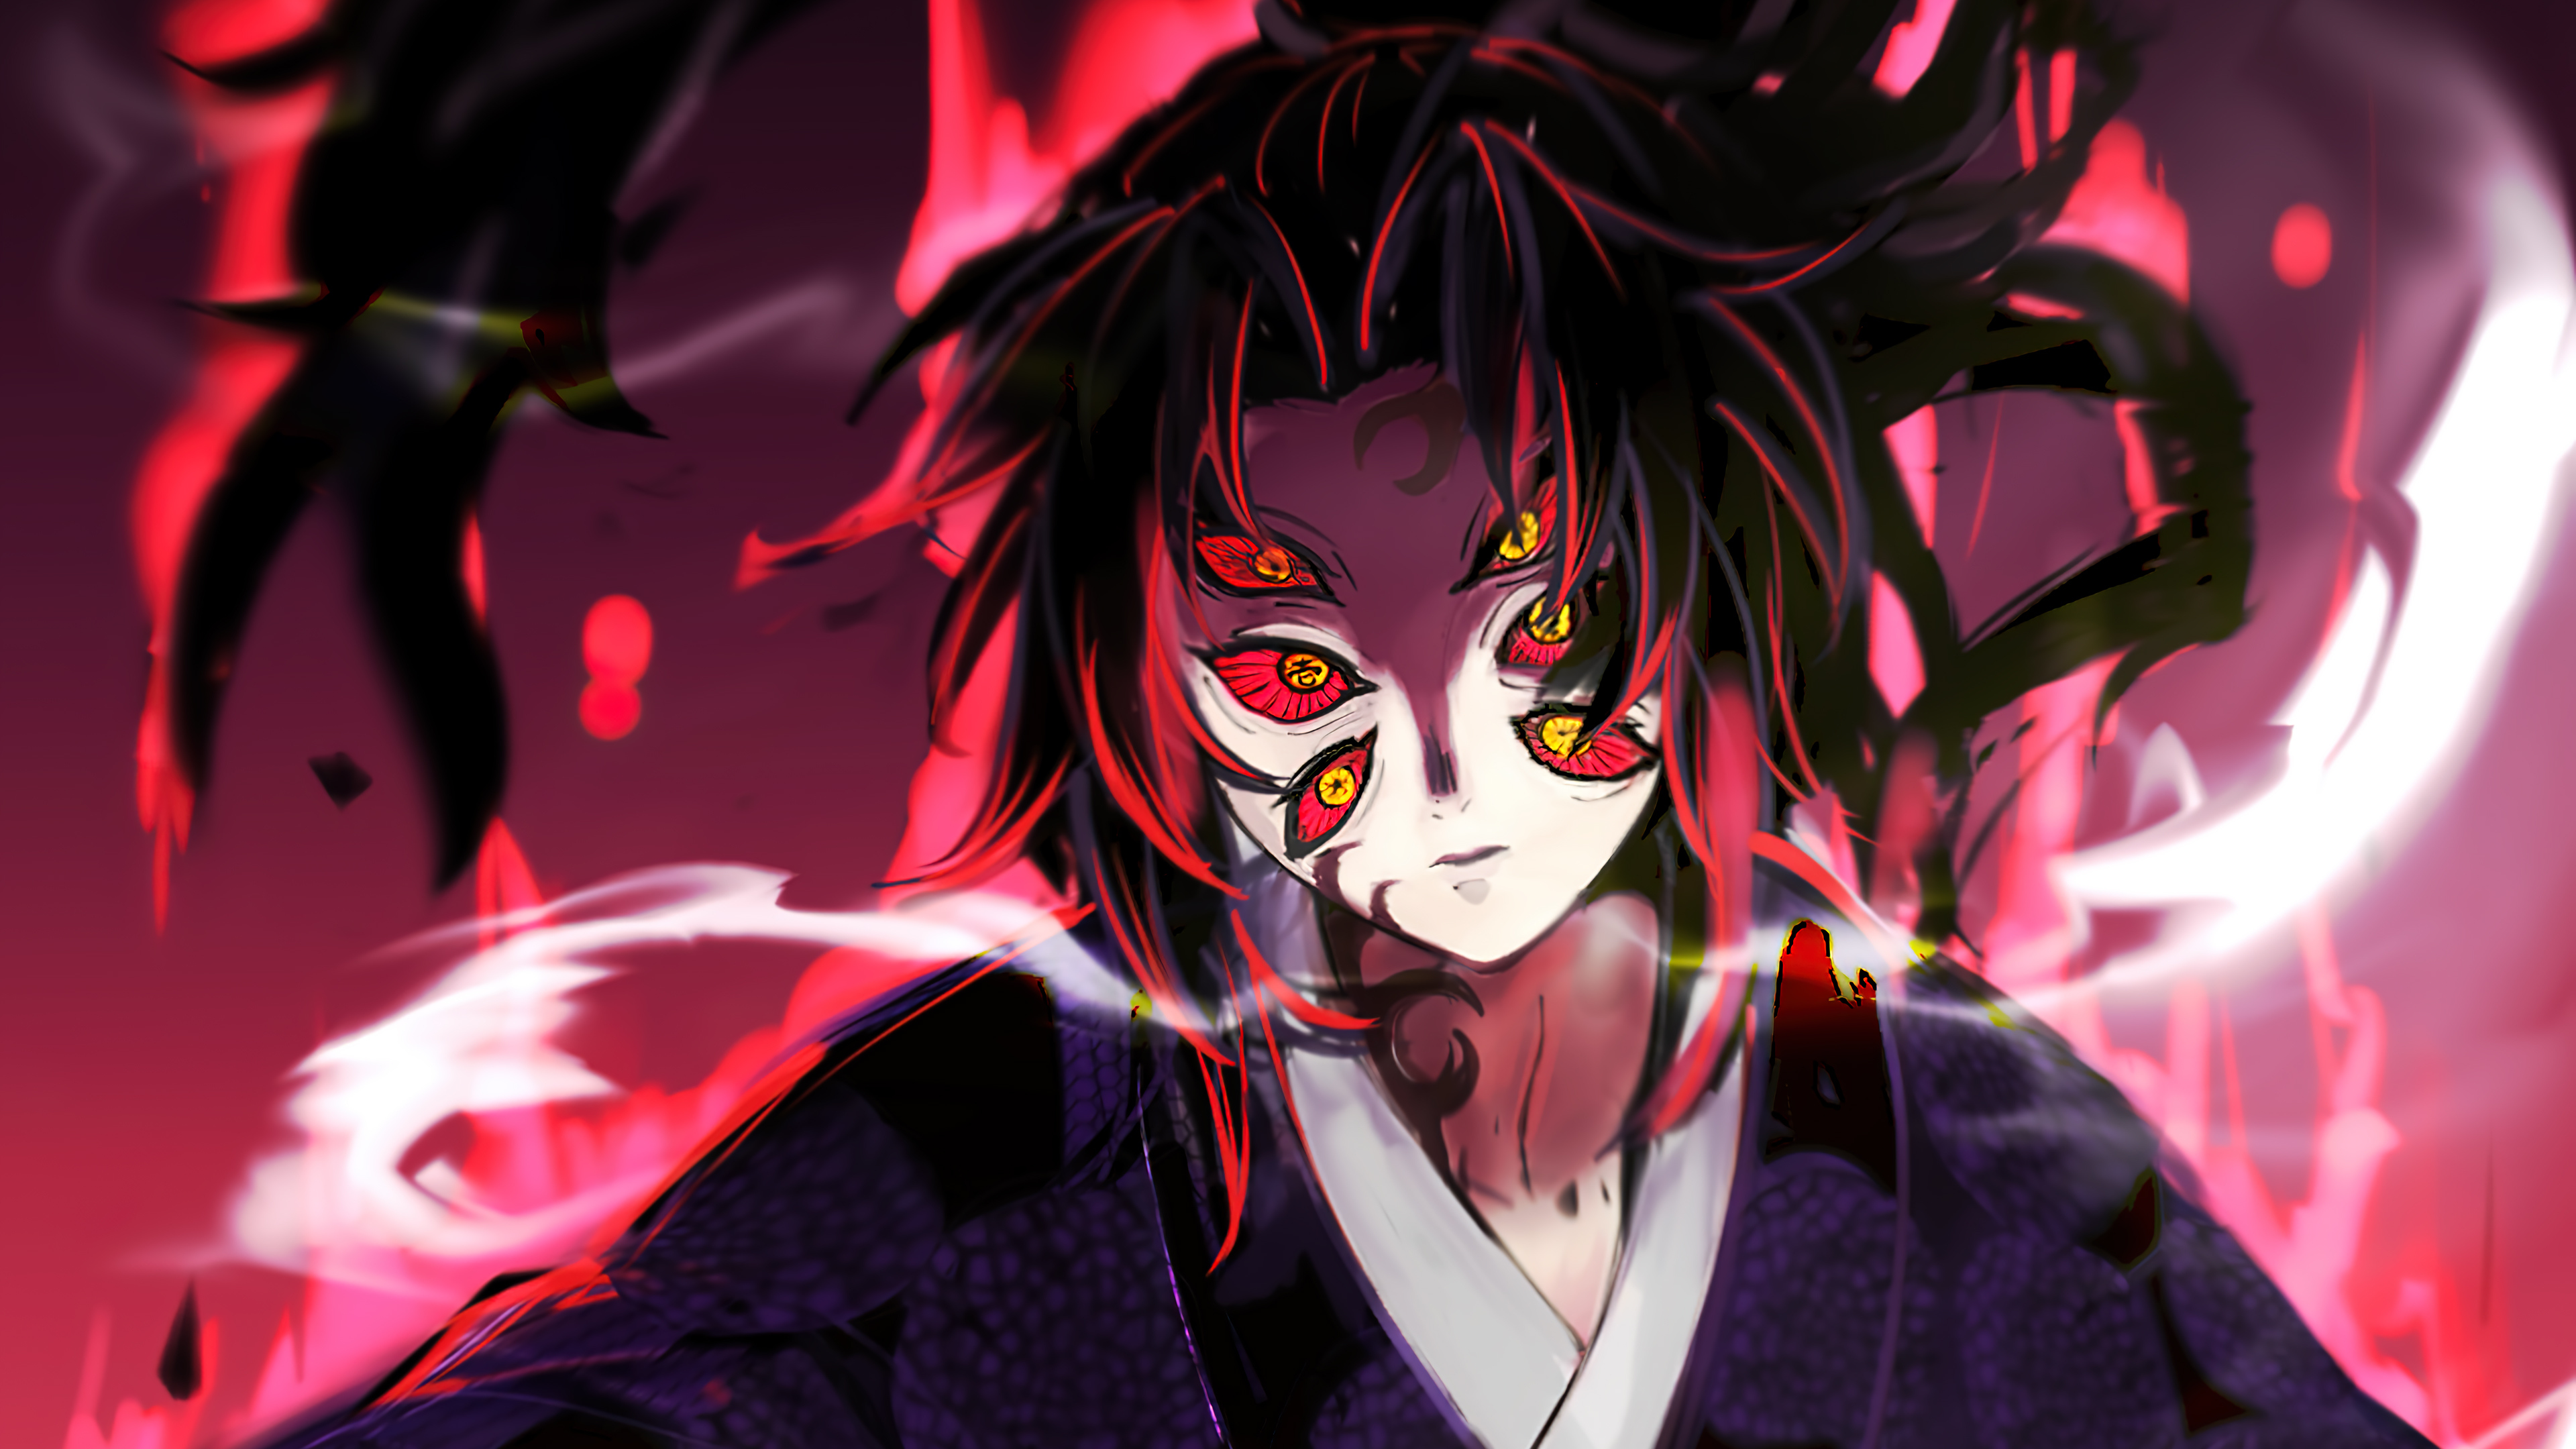 Demon Slayer Kokushibou fanart  Anime demon Upper moon 1 wallpaper  Slayer anime